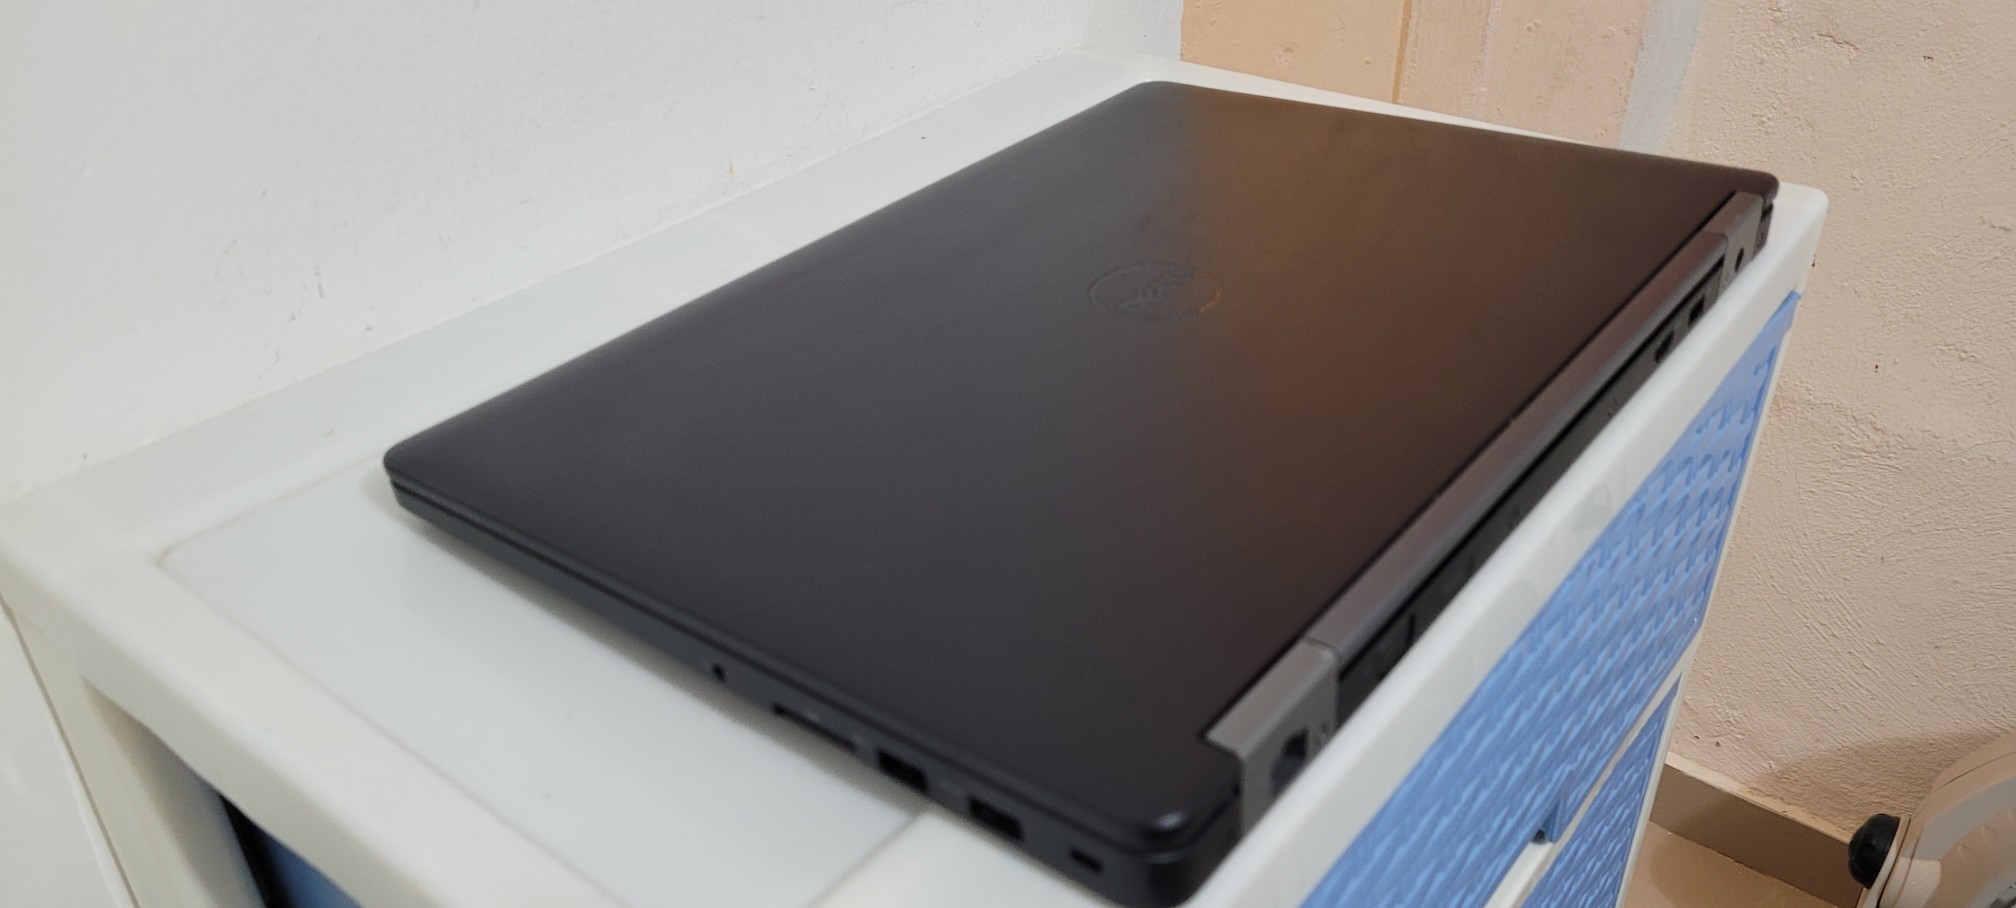 computadoras y laptops - Dell Slim 7490 14 Pulg Core i7 8va Gen Ram 16gb ddr4 Disco 512gb SSD Solido 2